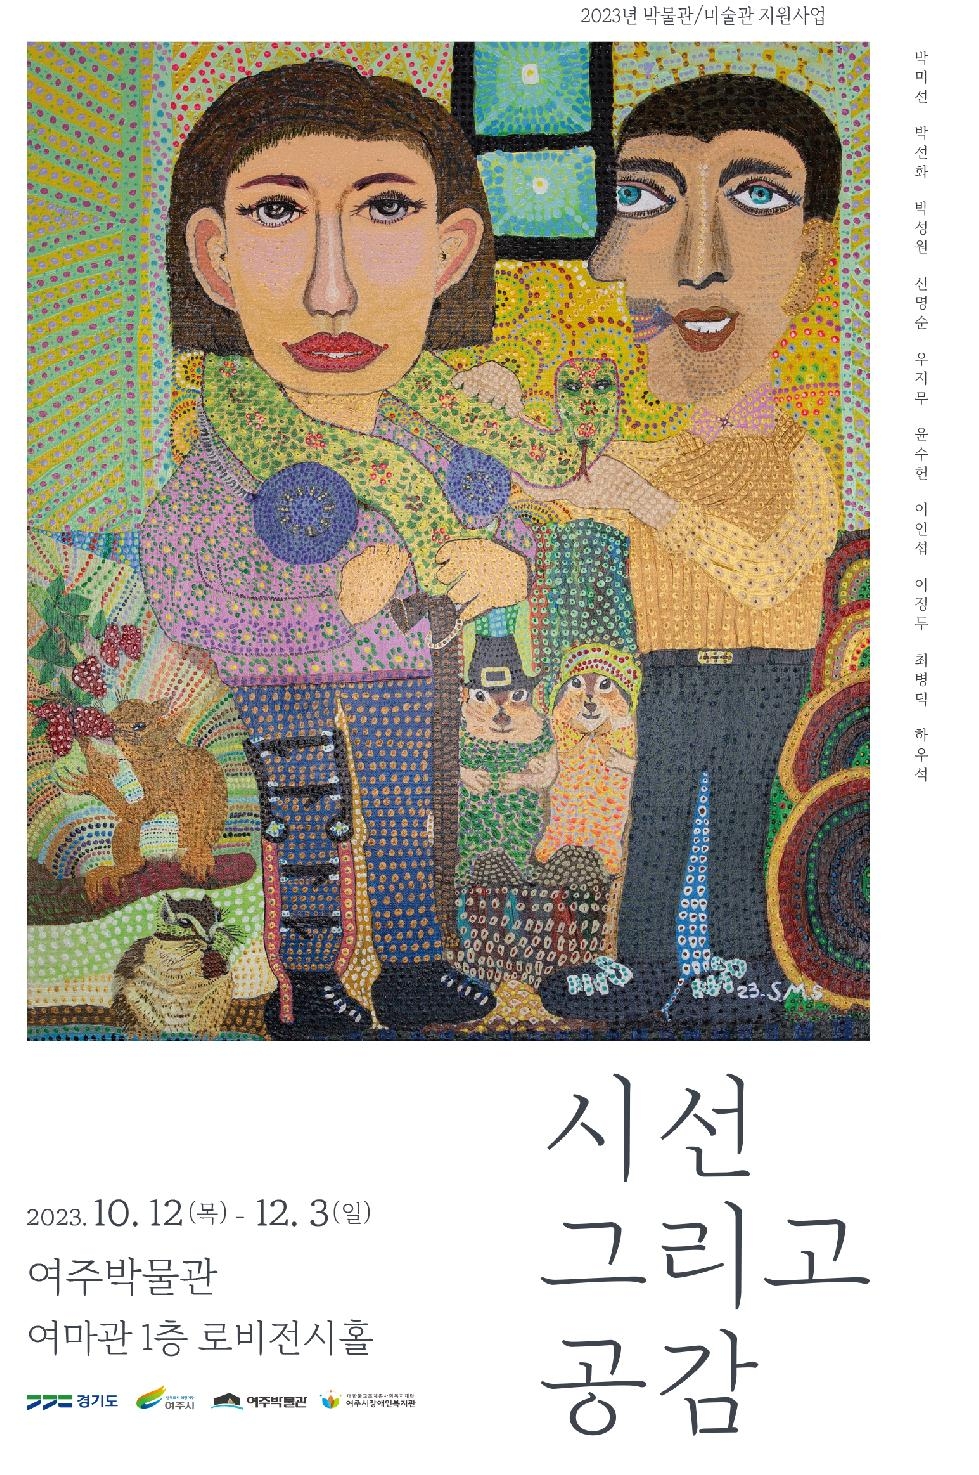 여주박물관 장애인 미술작품 전시회 “시선 그리고 공감” 개최